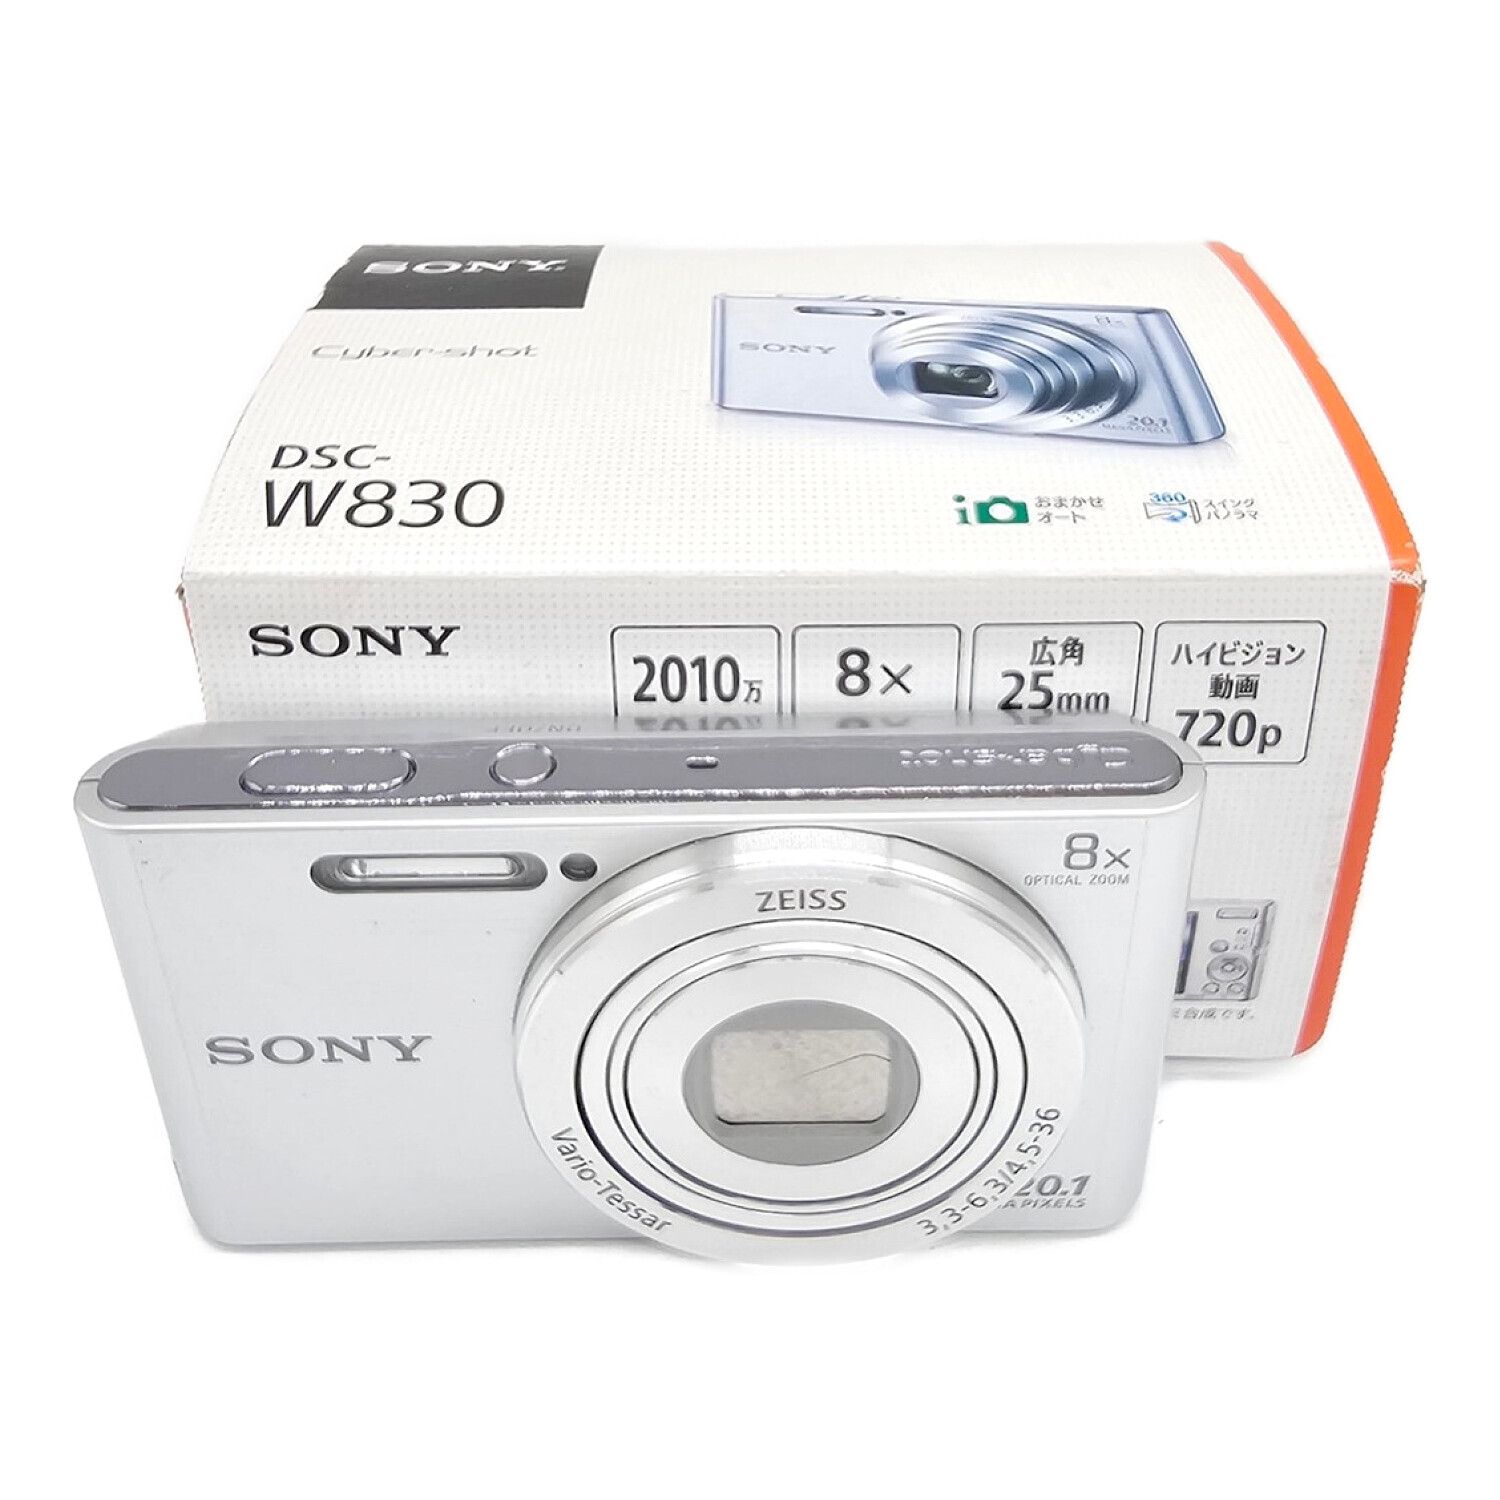 SONY (ソニー) コンパクトデジタルカメラ 17年発売モデル DSC-W830 ...